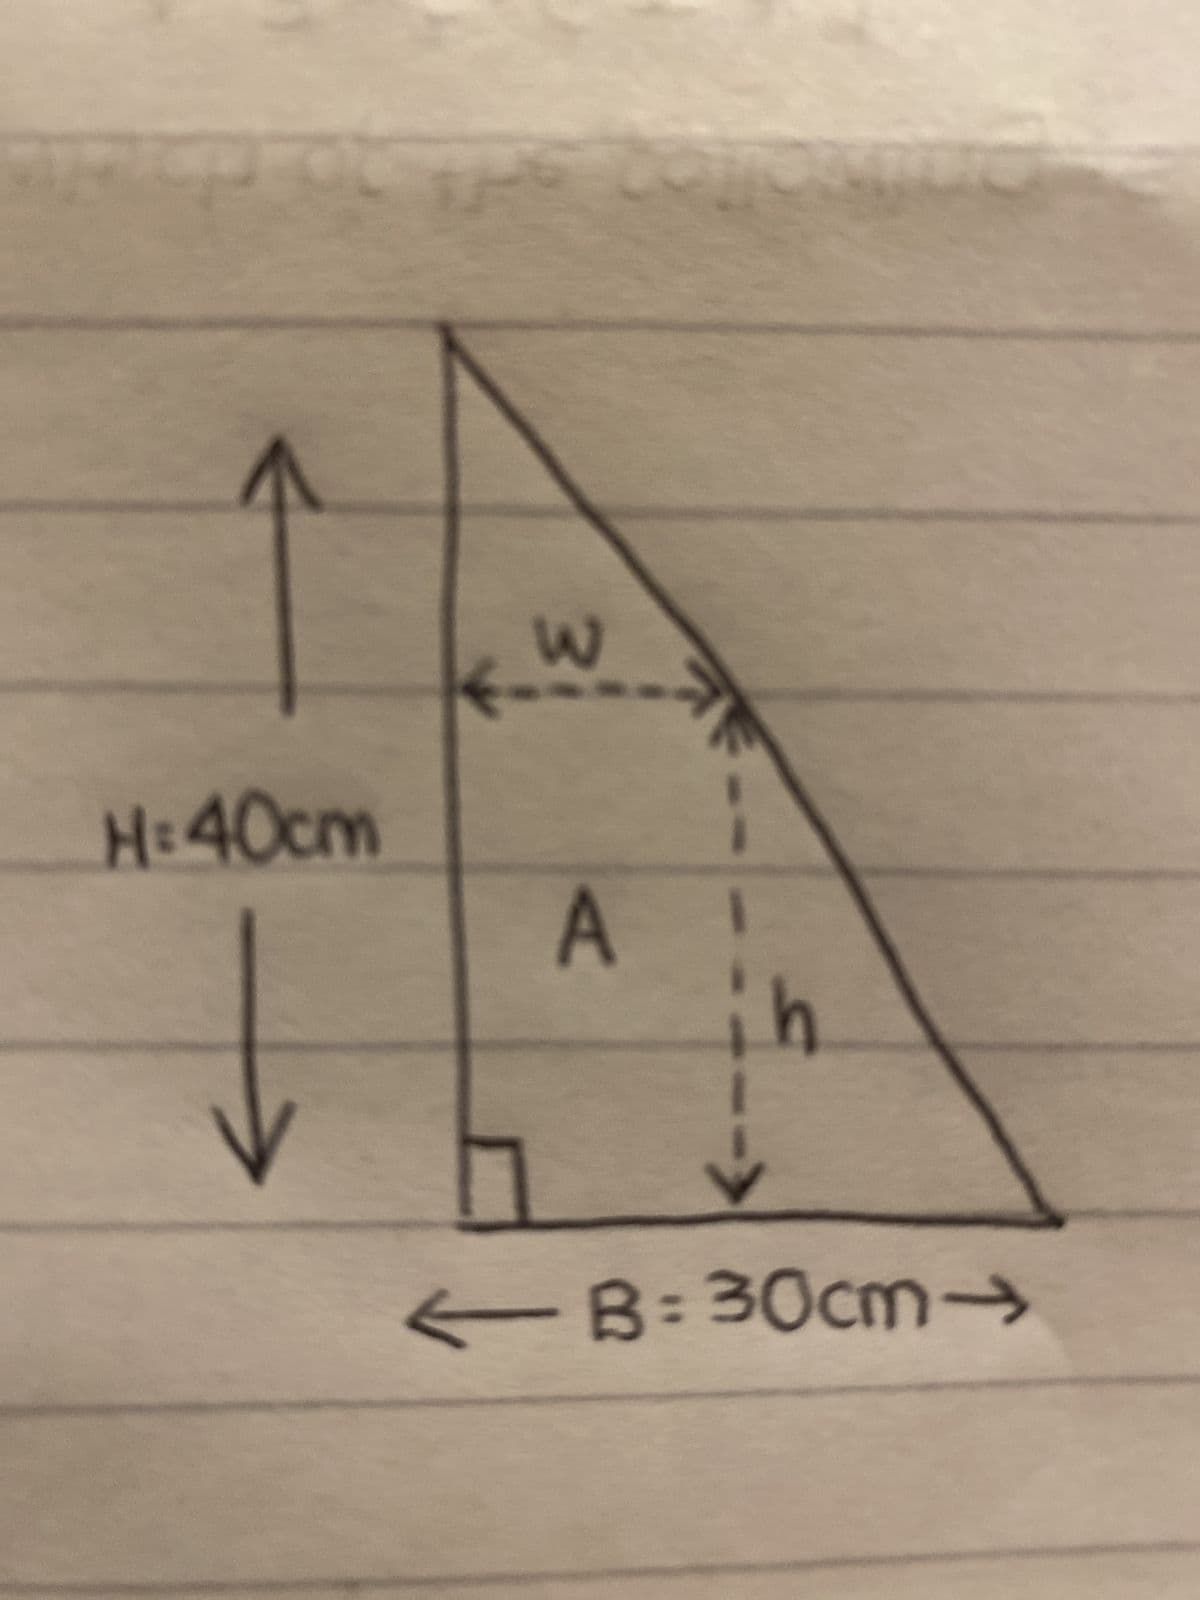 P
H:40cm
W
A
h
← B=30cm->